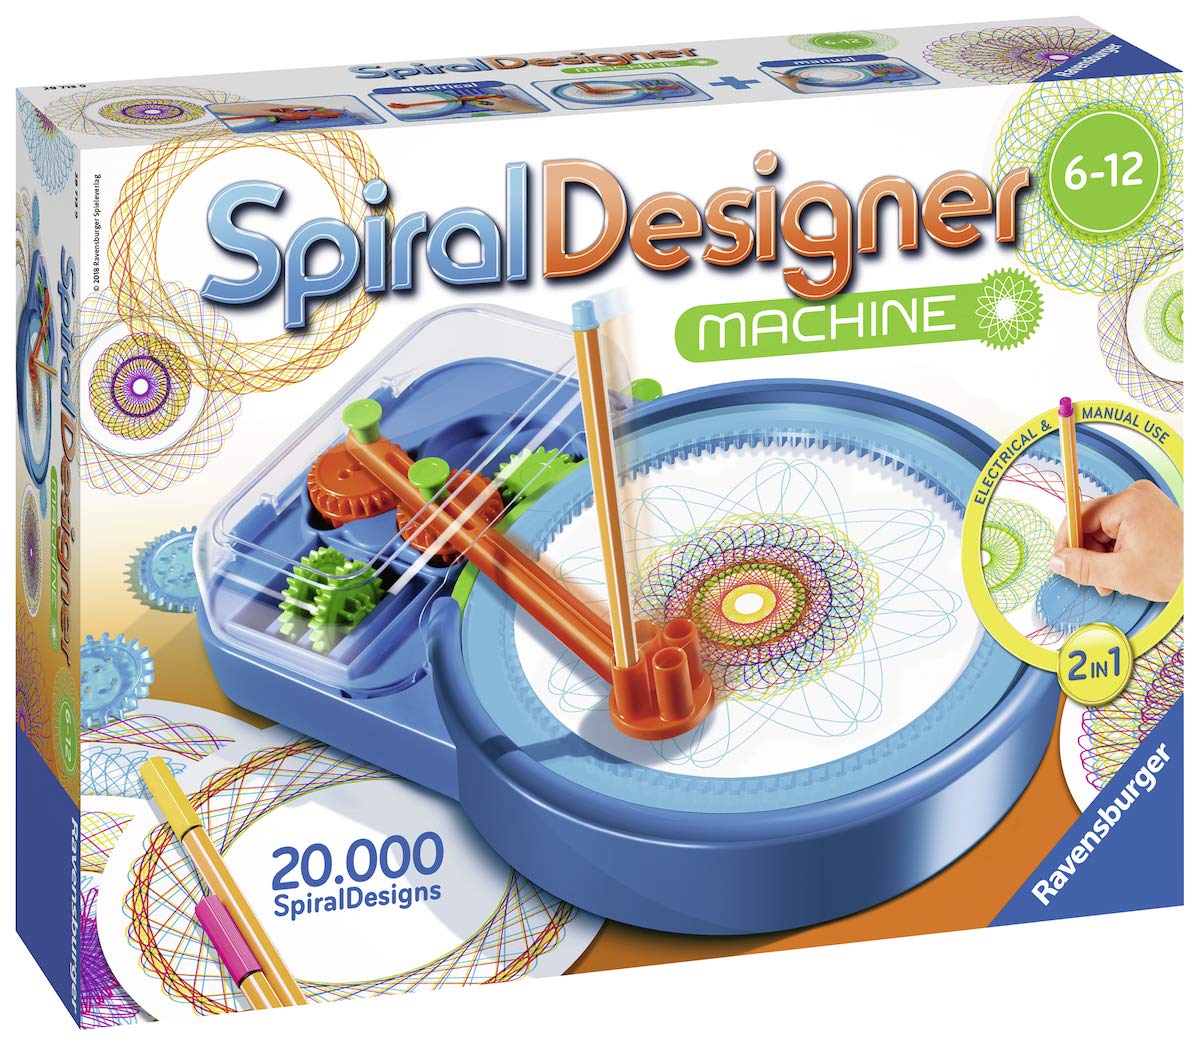 Ravensburger Creation Spiral Designer Machine